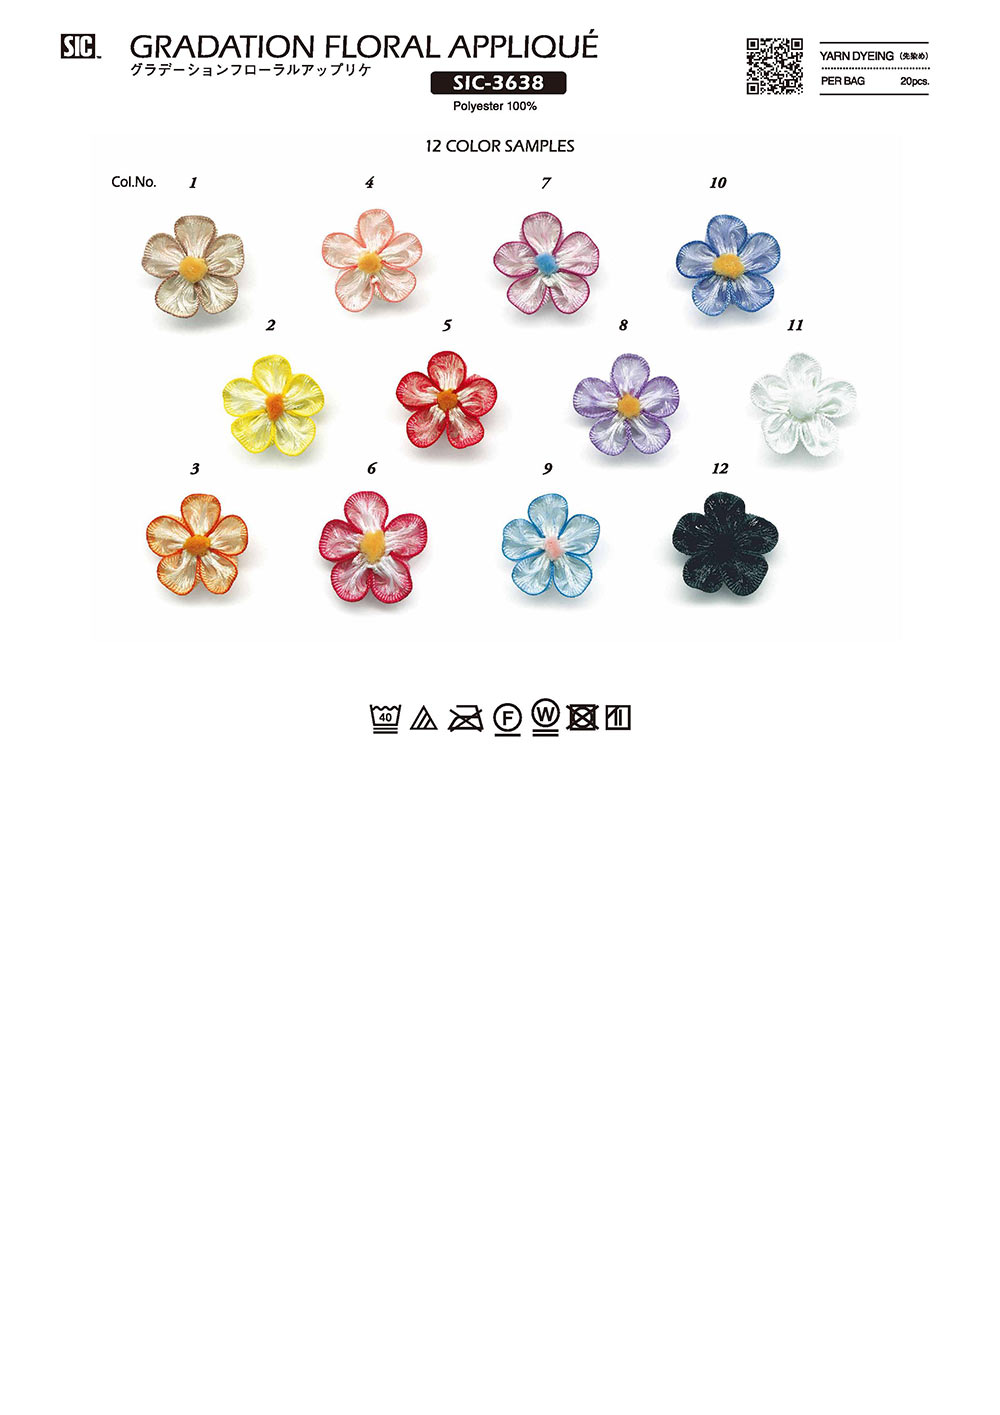 SIC-3638 Blumenapplikation Mit Farbverlauf[Verschiedene Waren Und Andere] SHINDO(SIC)